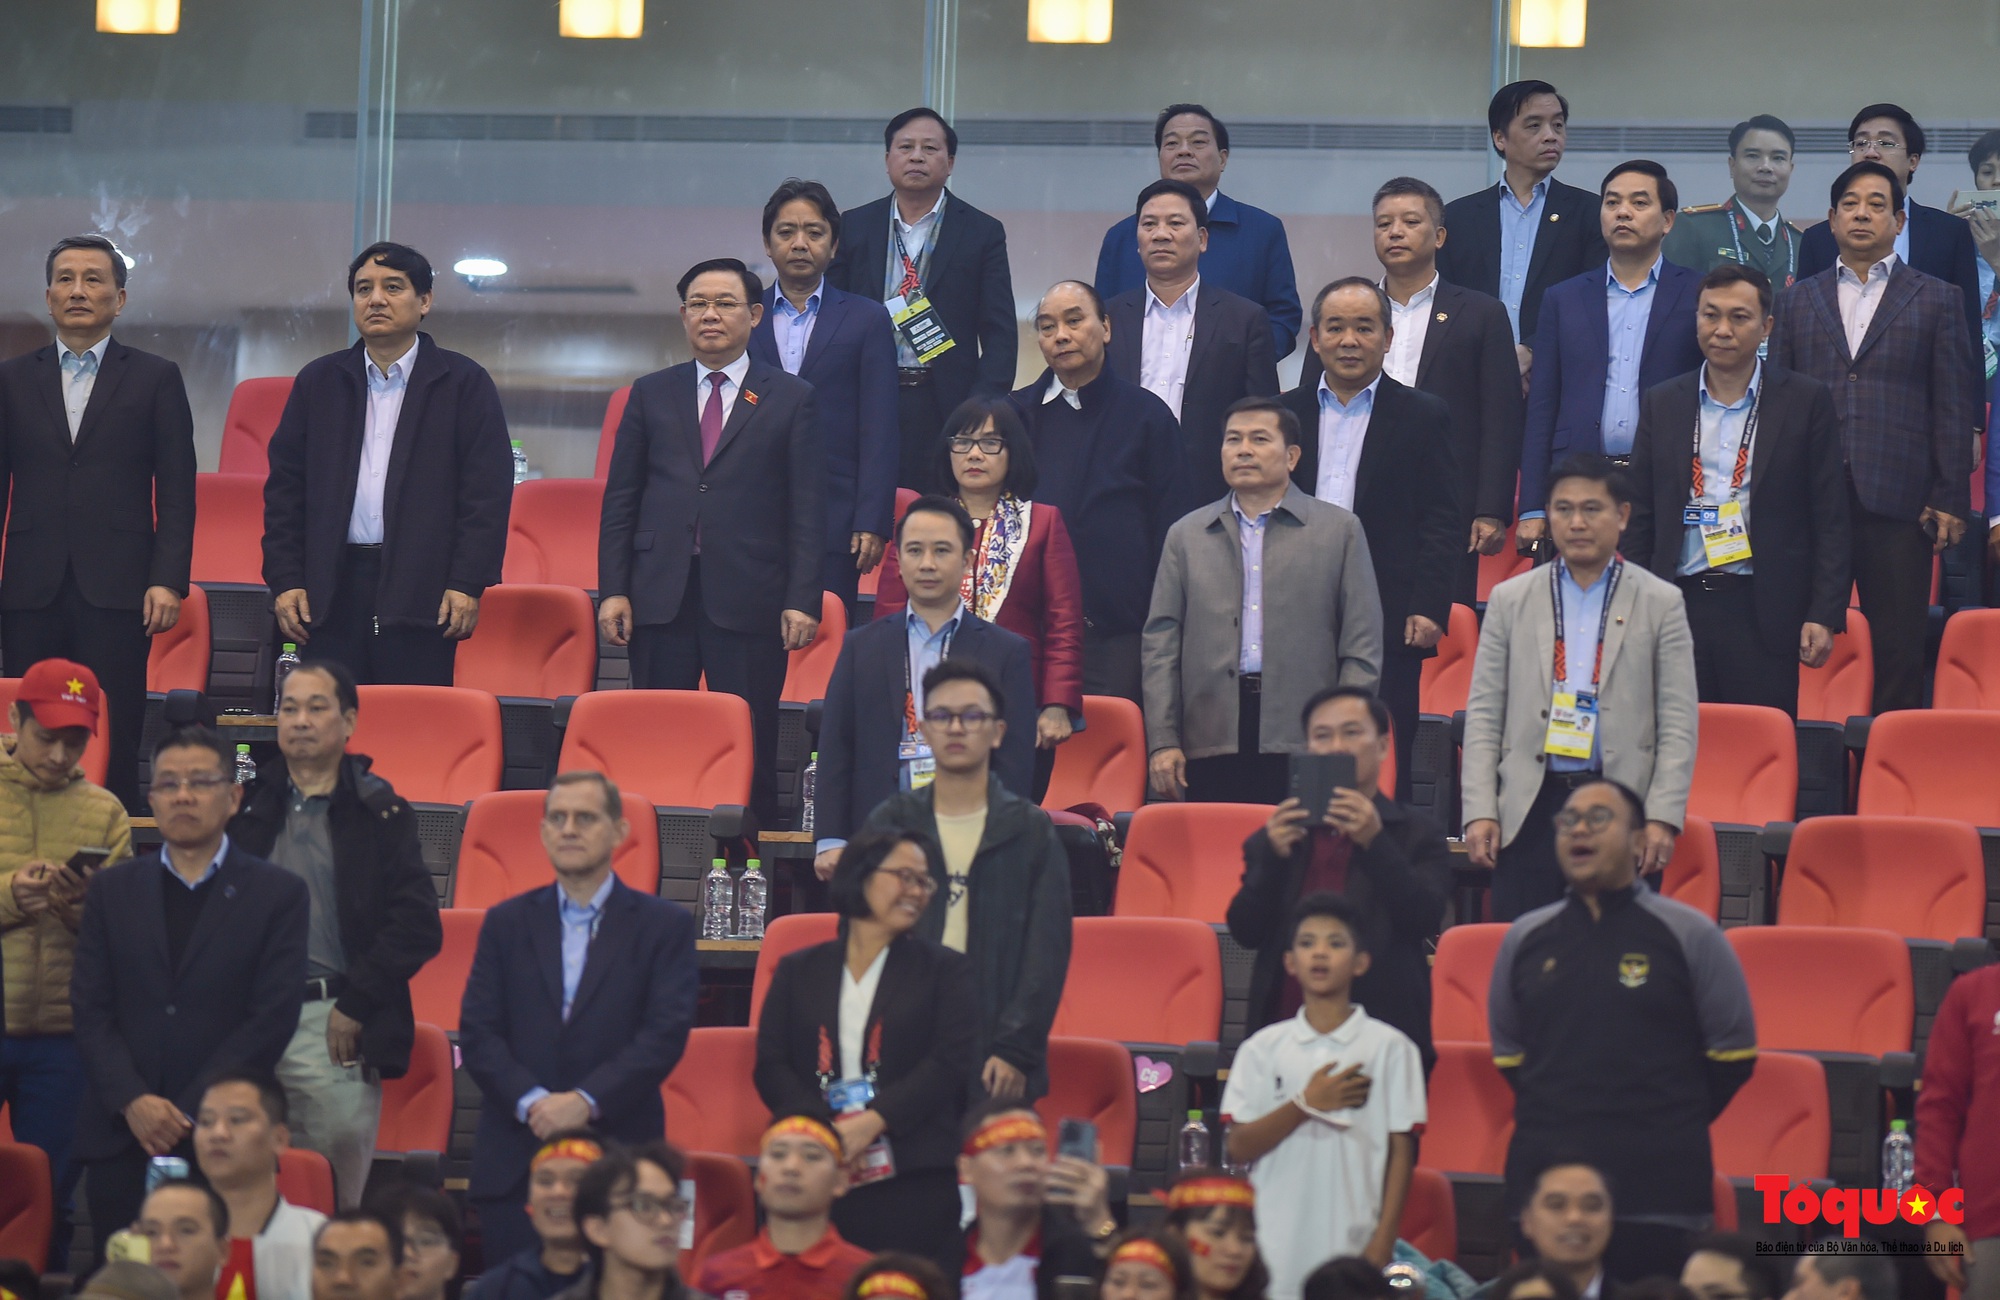 Chùm ảnh Bán kết AFF Cup 2022: Niềm vui chiến thắng của cầu thủ, cổ động viên Việt Nam trên sân Mỹ Đình - Ảnh 2.